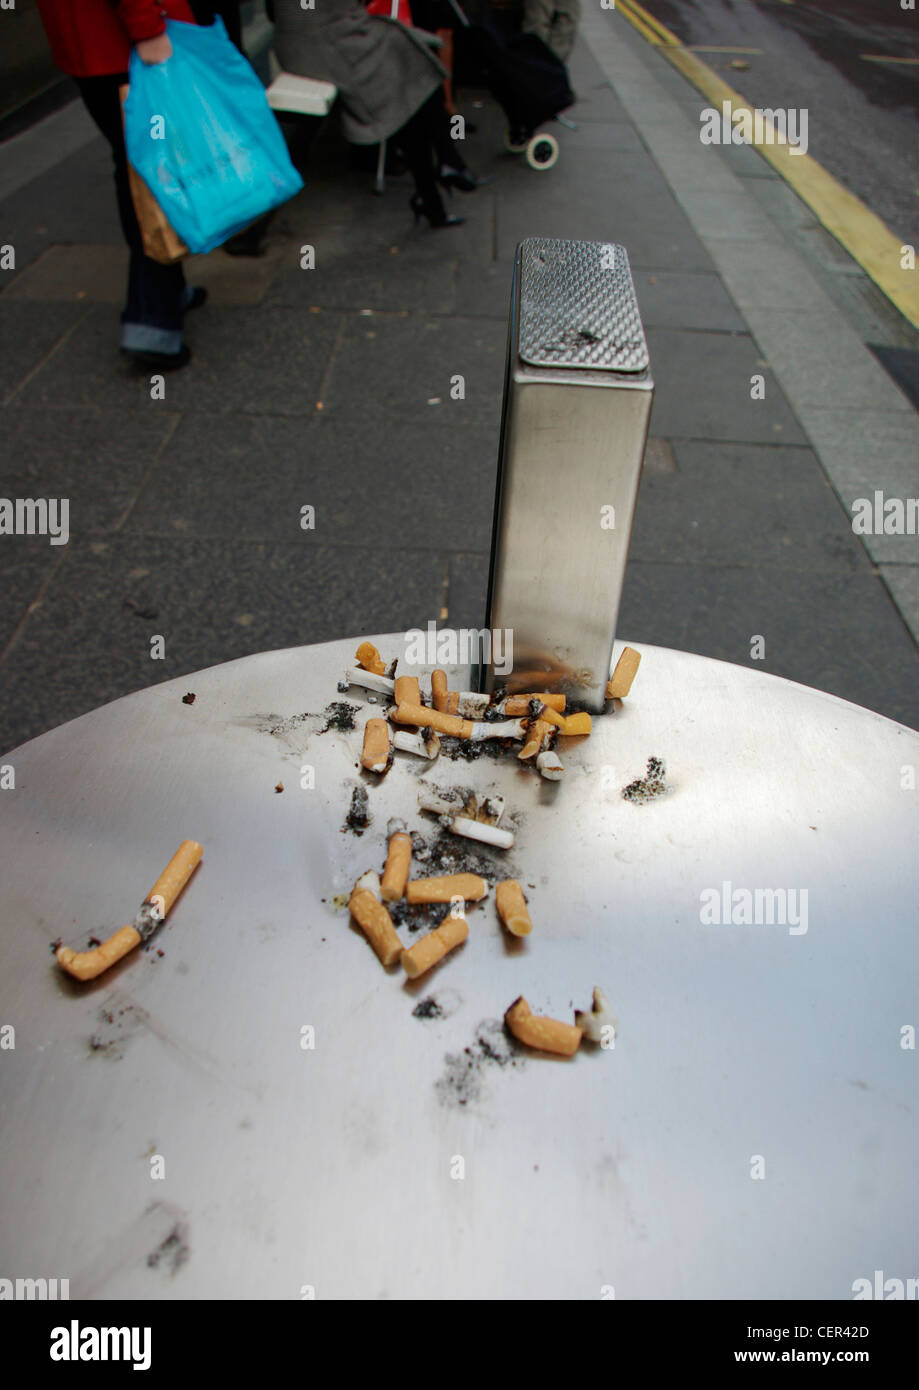 Mozziconi di sigaretta sulla parte superiore di una lettiera bin. Foto Stock